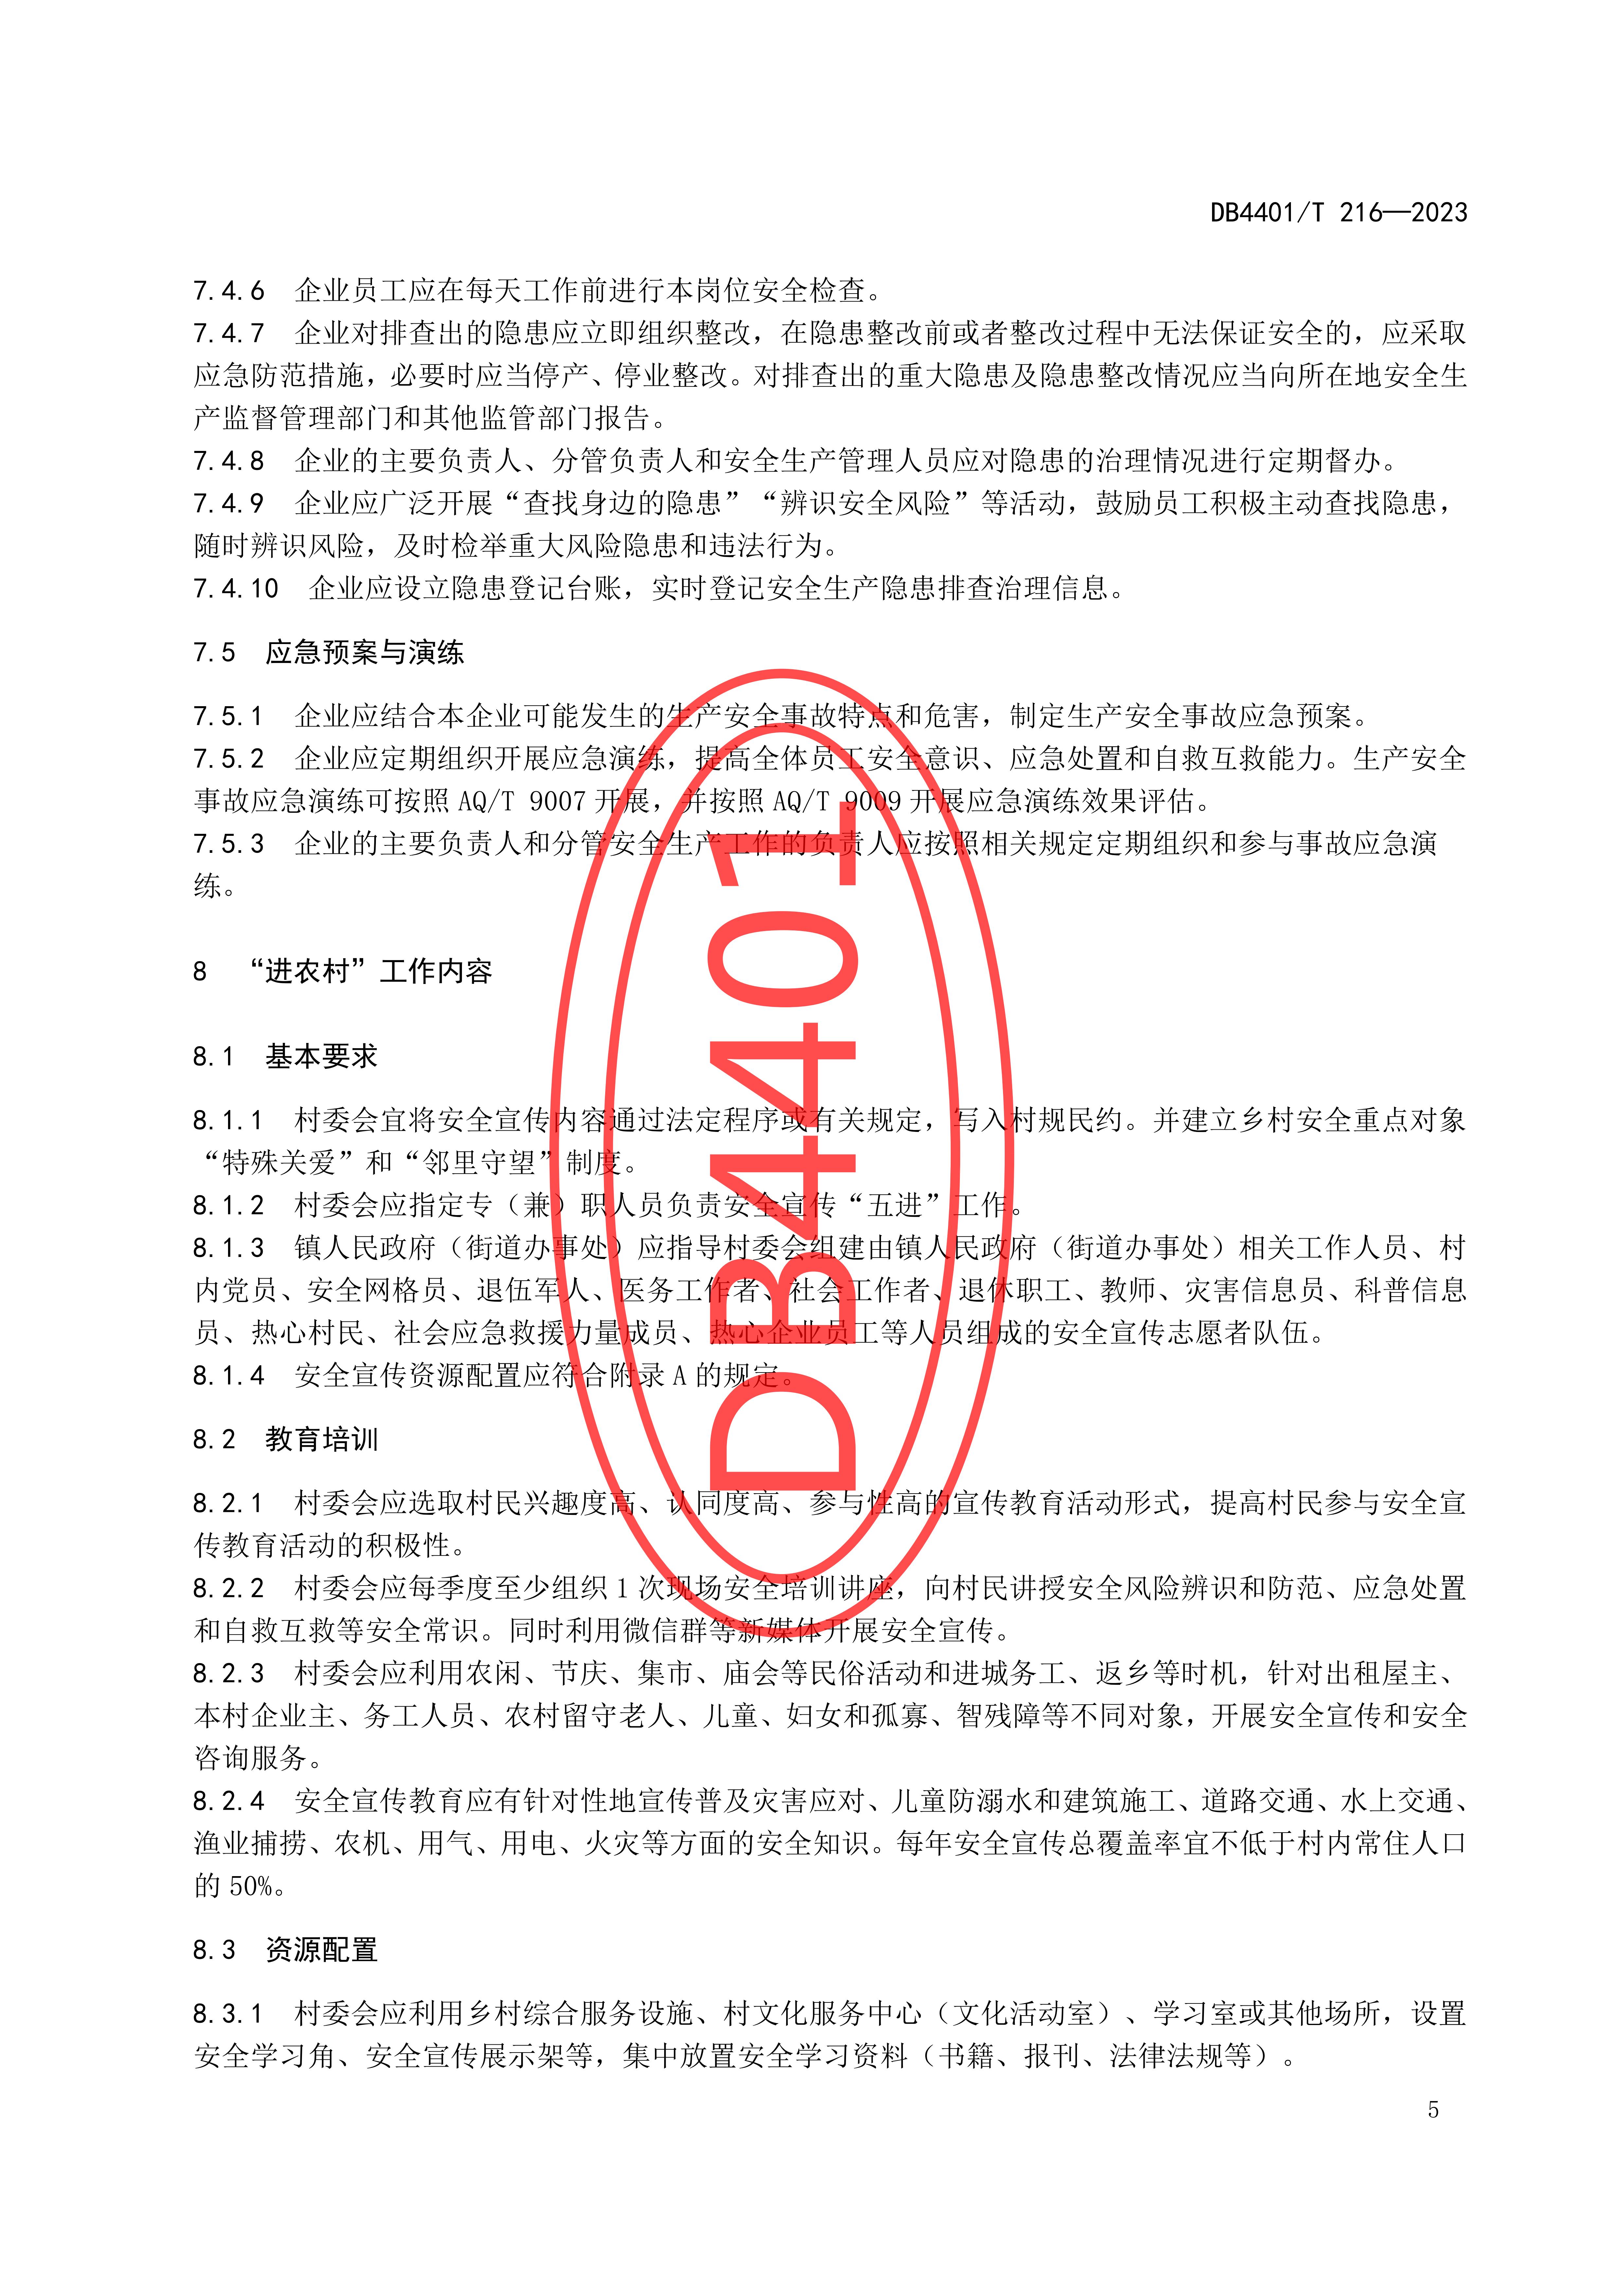 (终稿 发布稿)广州市地方标准《安全宣传“五进”工作规范》20230625_10.jpg